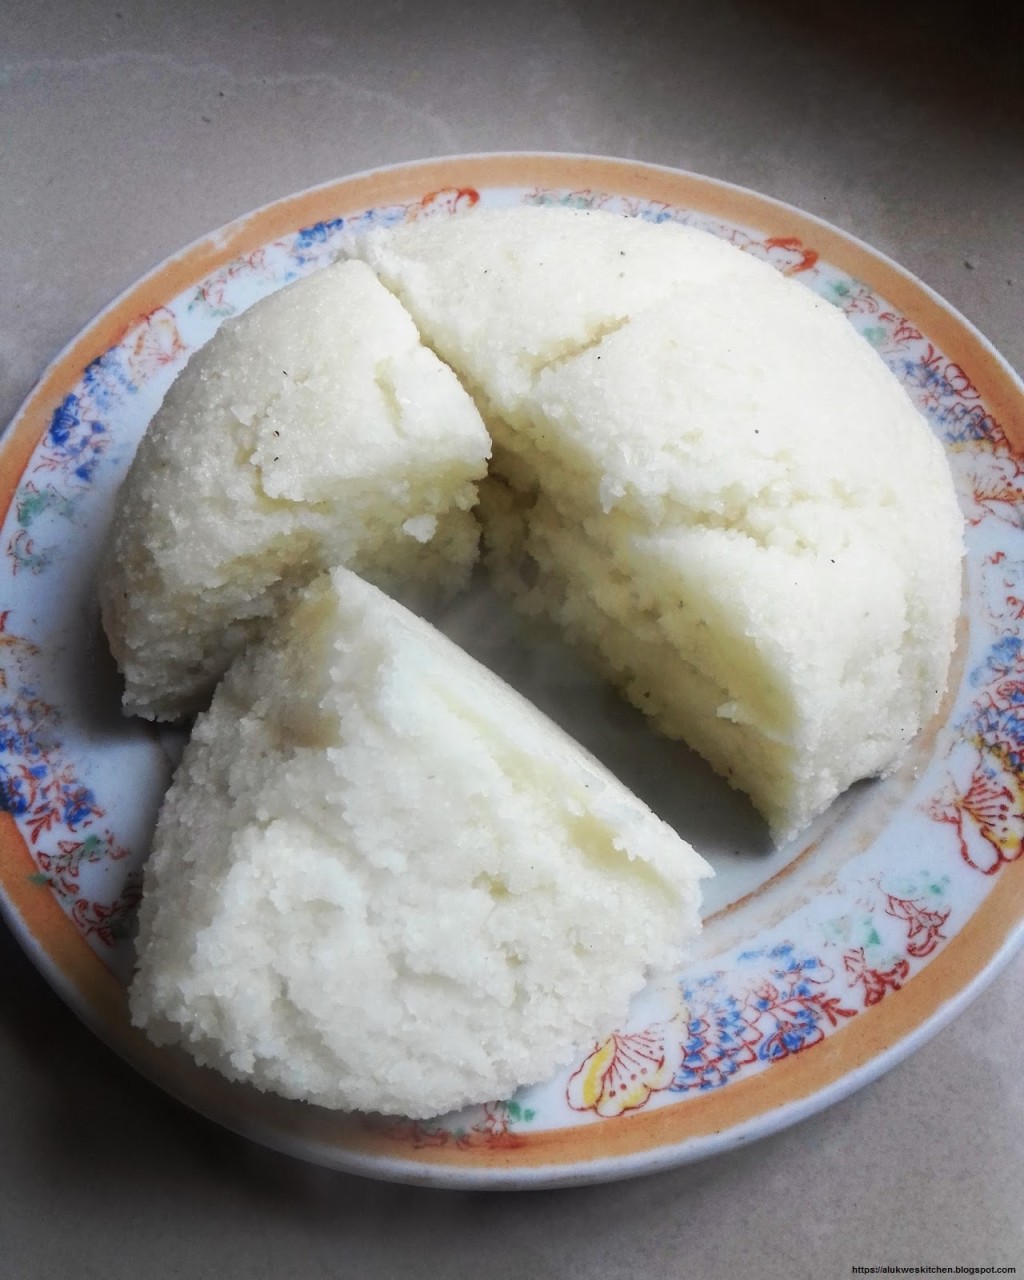 烏咖喱是用水煮熟的麵團狀的玉米粉食品，是東部非洲大湖地區和南部非洲飲食中最常見的澱粉類主食。